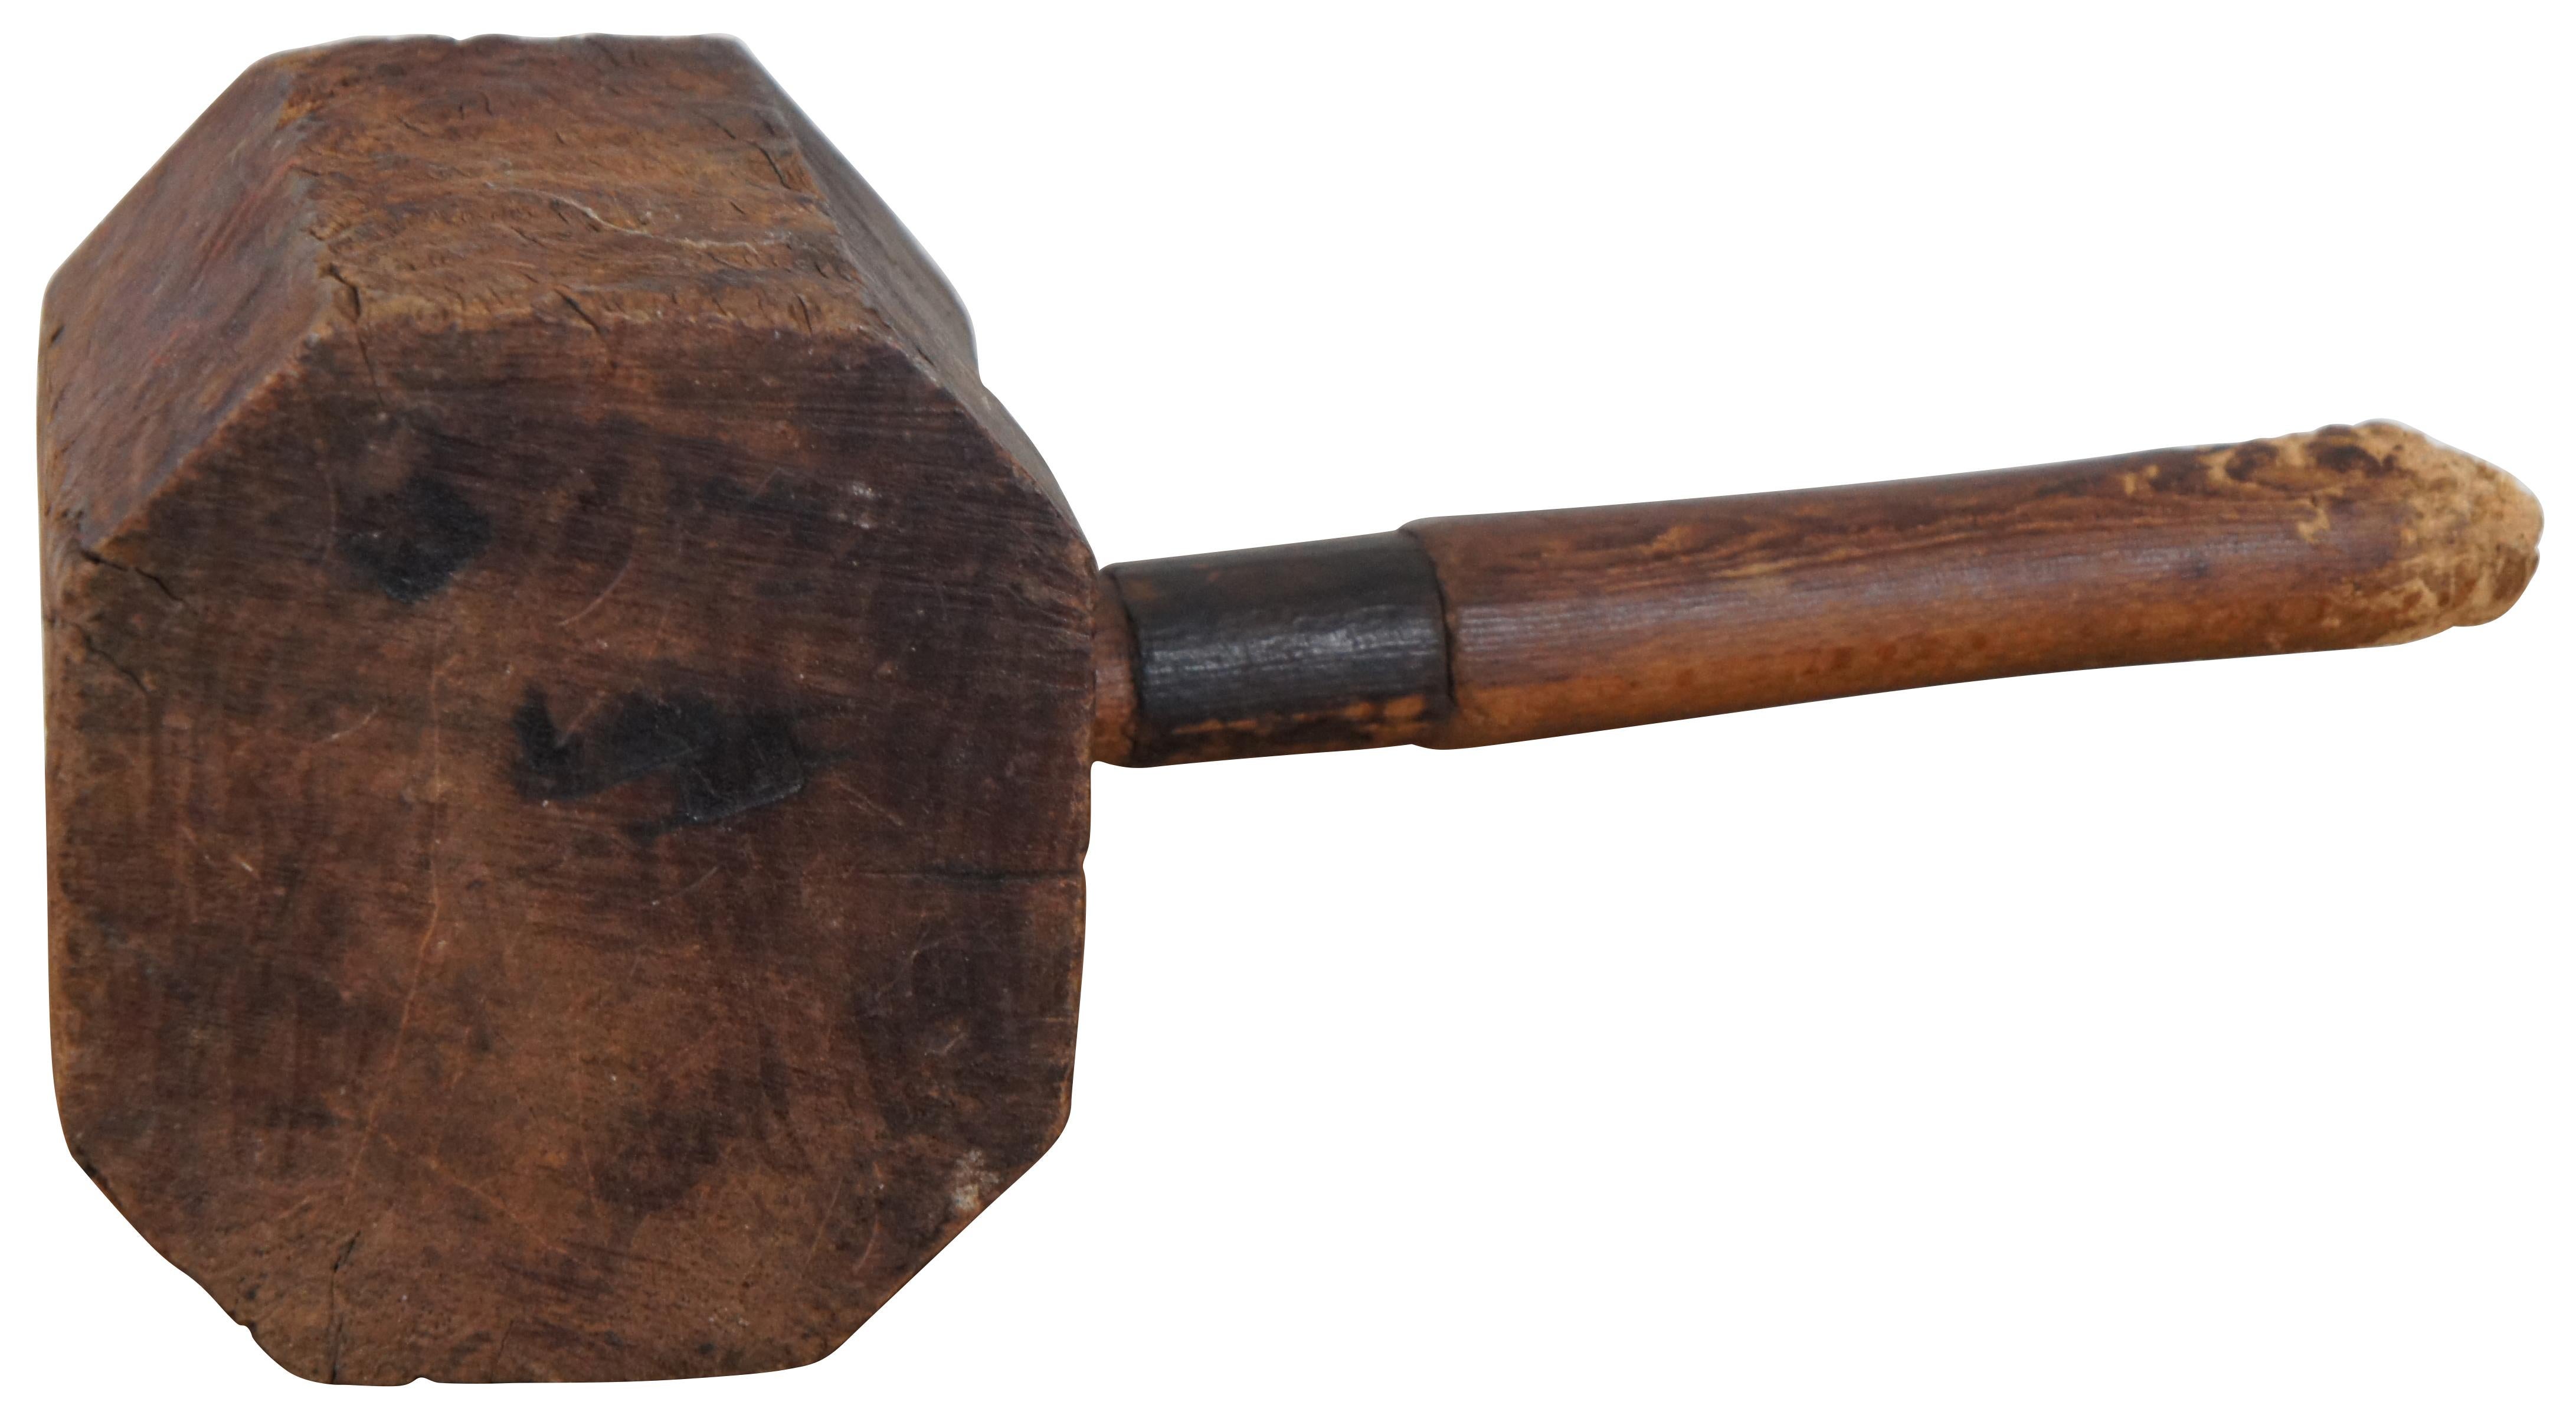 wooden sledge hammer